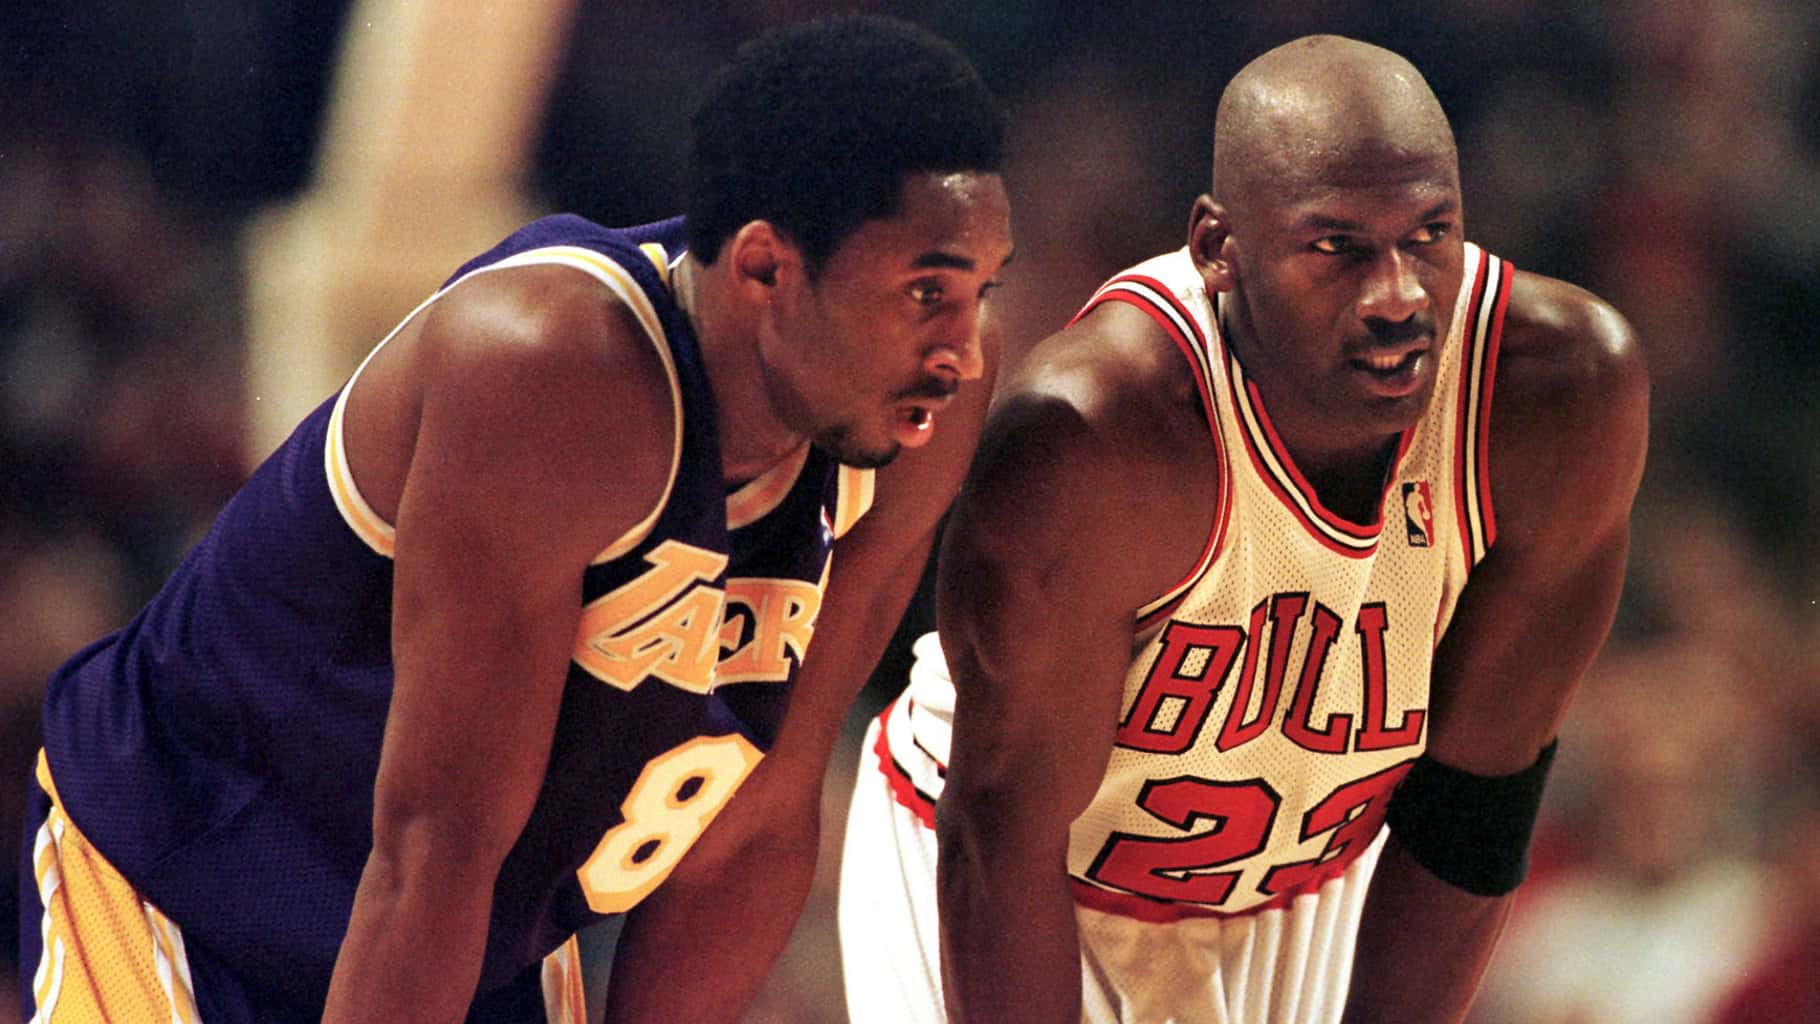 La mentalité de compétiteur de Michael Jordan “n’a pas d’égal” selon un ancien assistant coach des Lakers